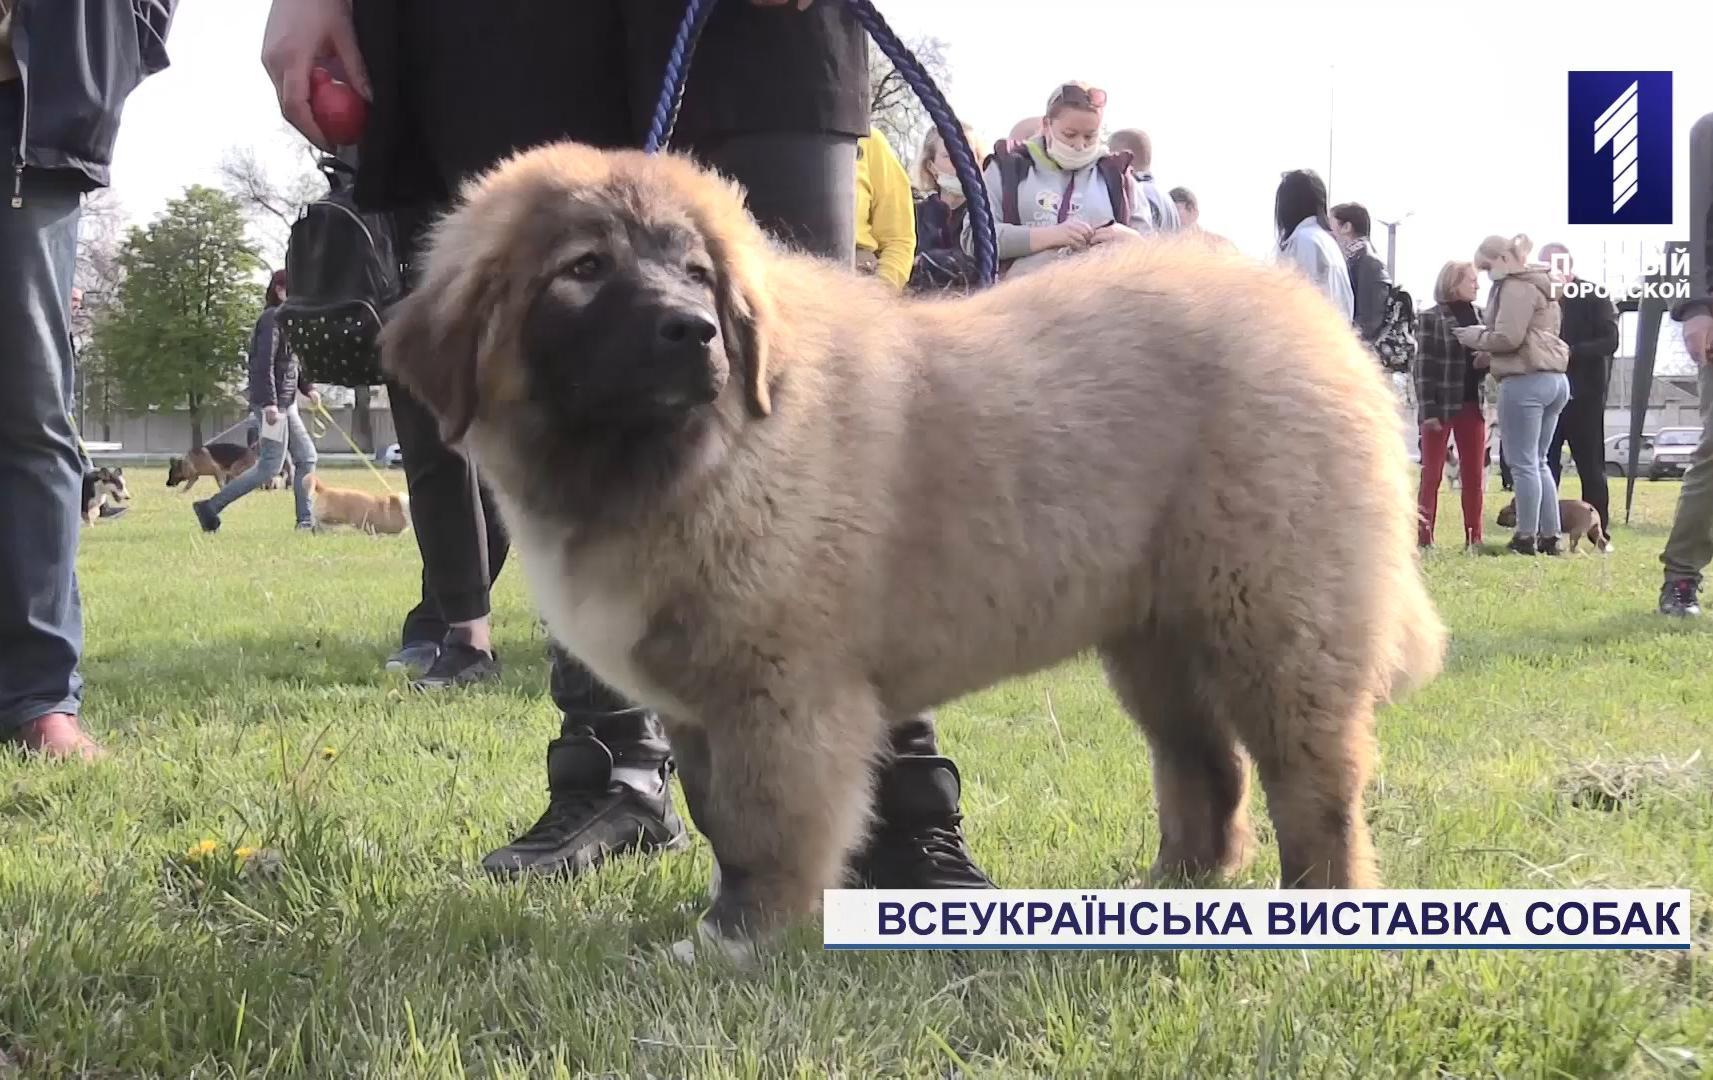 Всеукраїнська виставка собак «Весна Кривбасу – 2021» відбулася у Кривому Розі